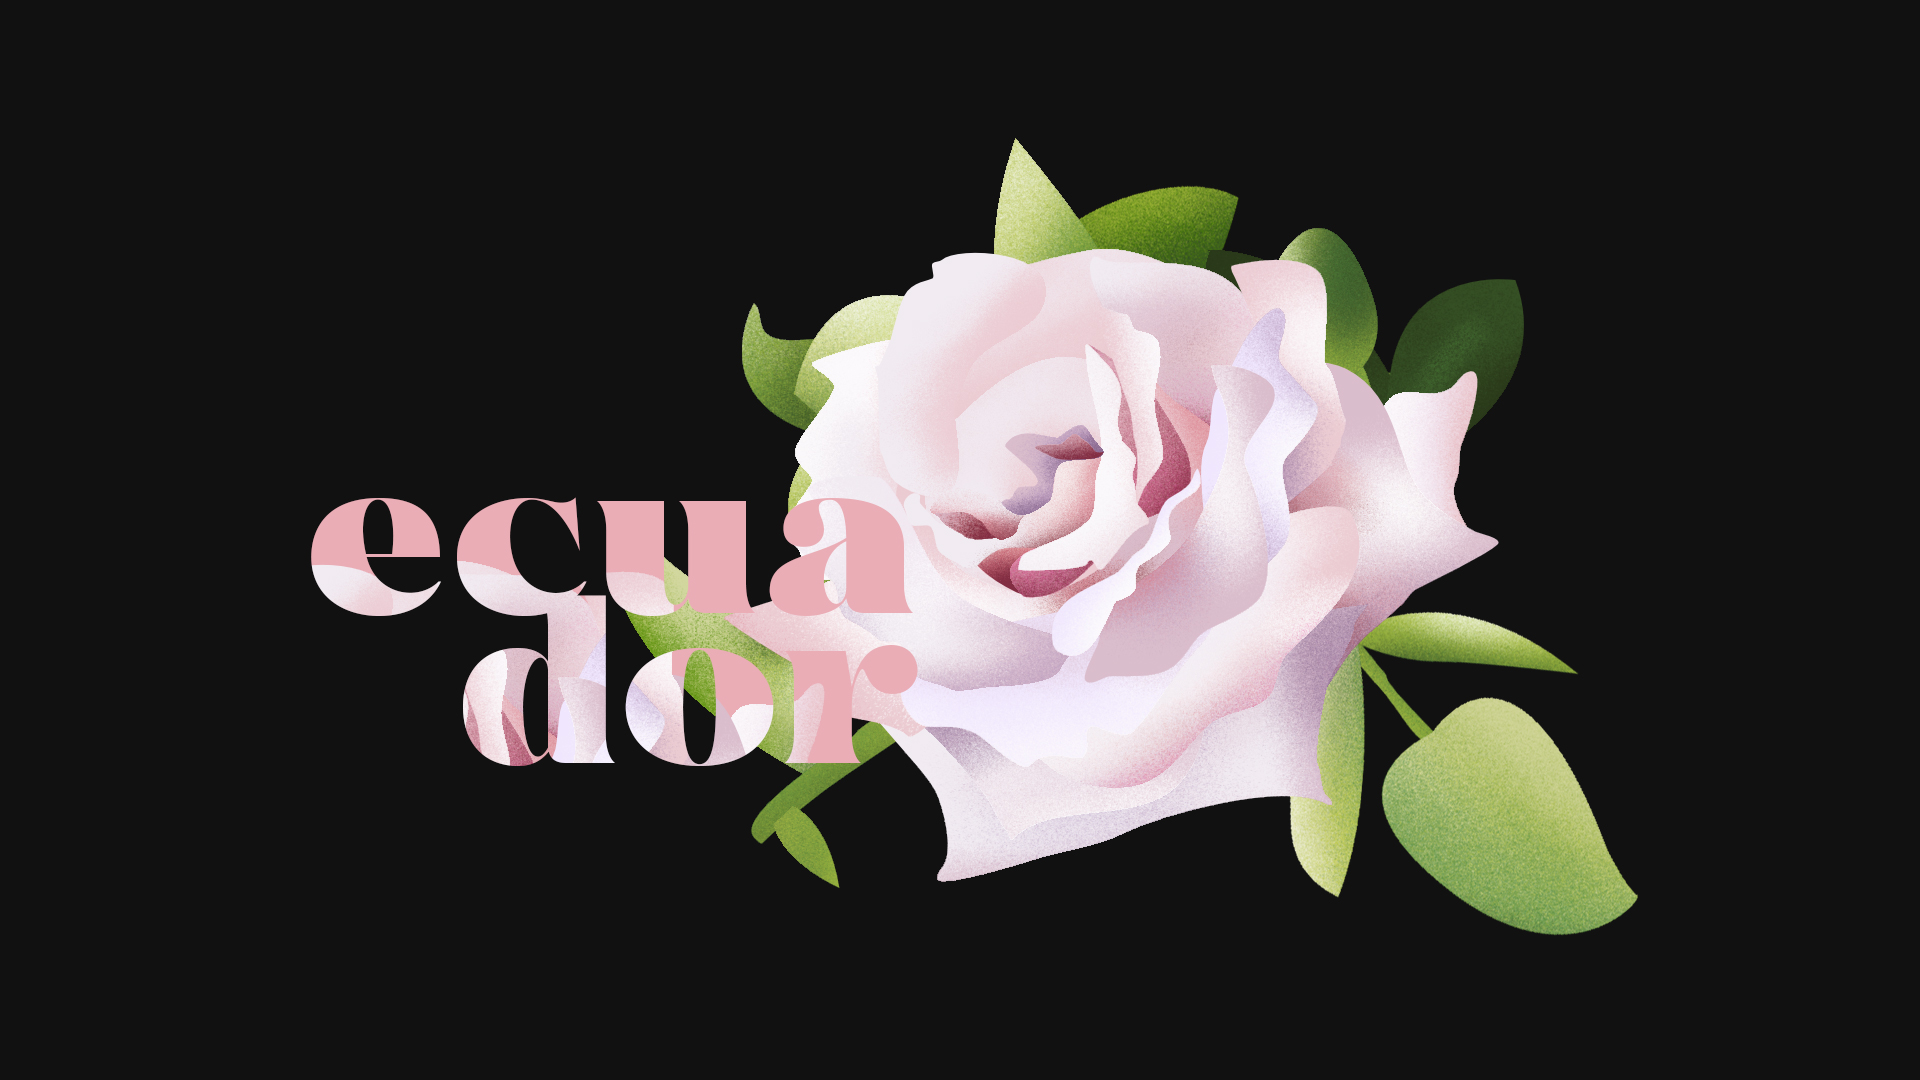 La Rosa representing Ecuador